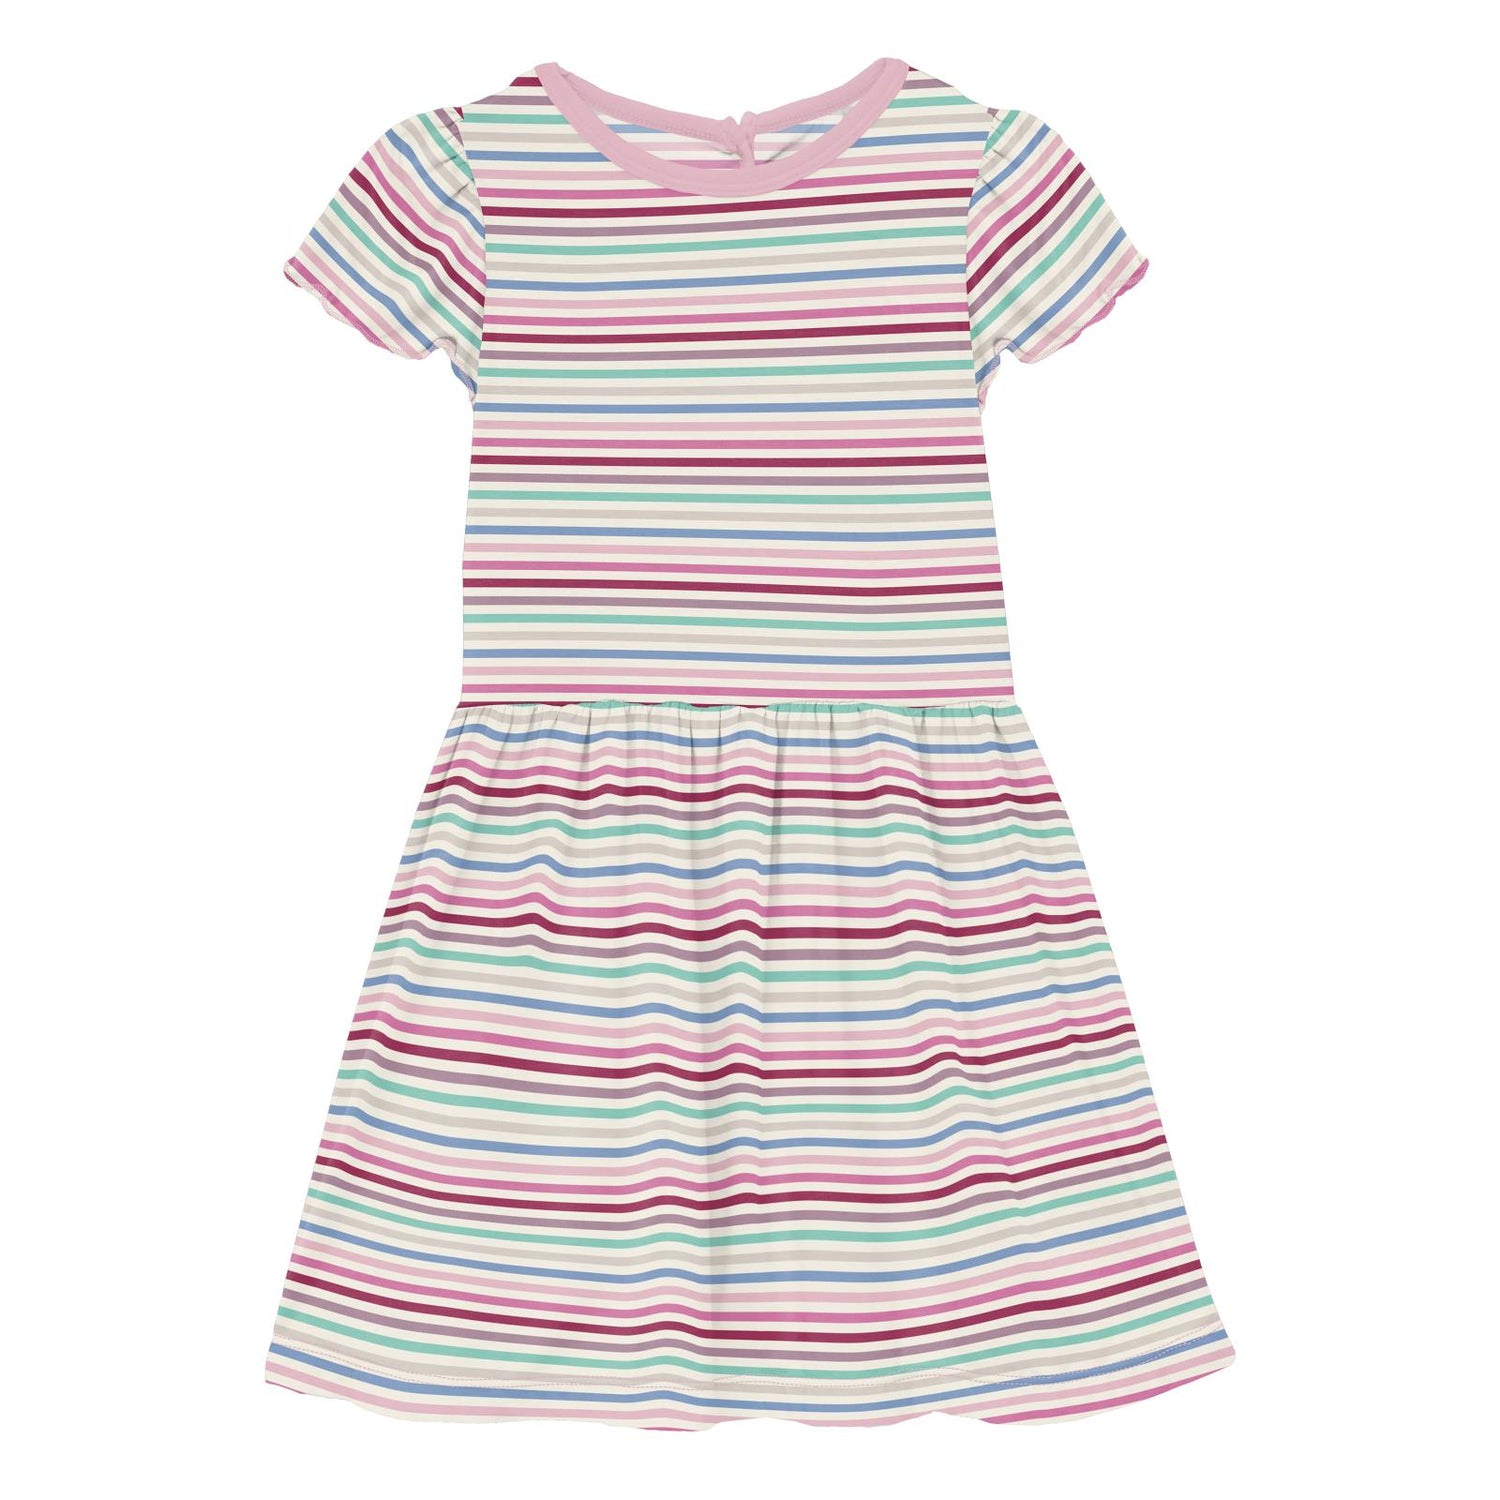 Print Flutter Sleeve Twirl Dress with Pockets in Make Believe Stripe